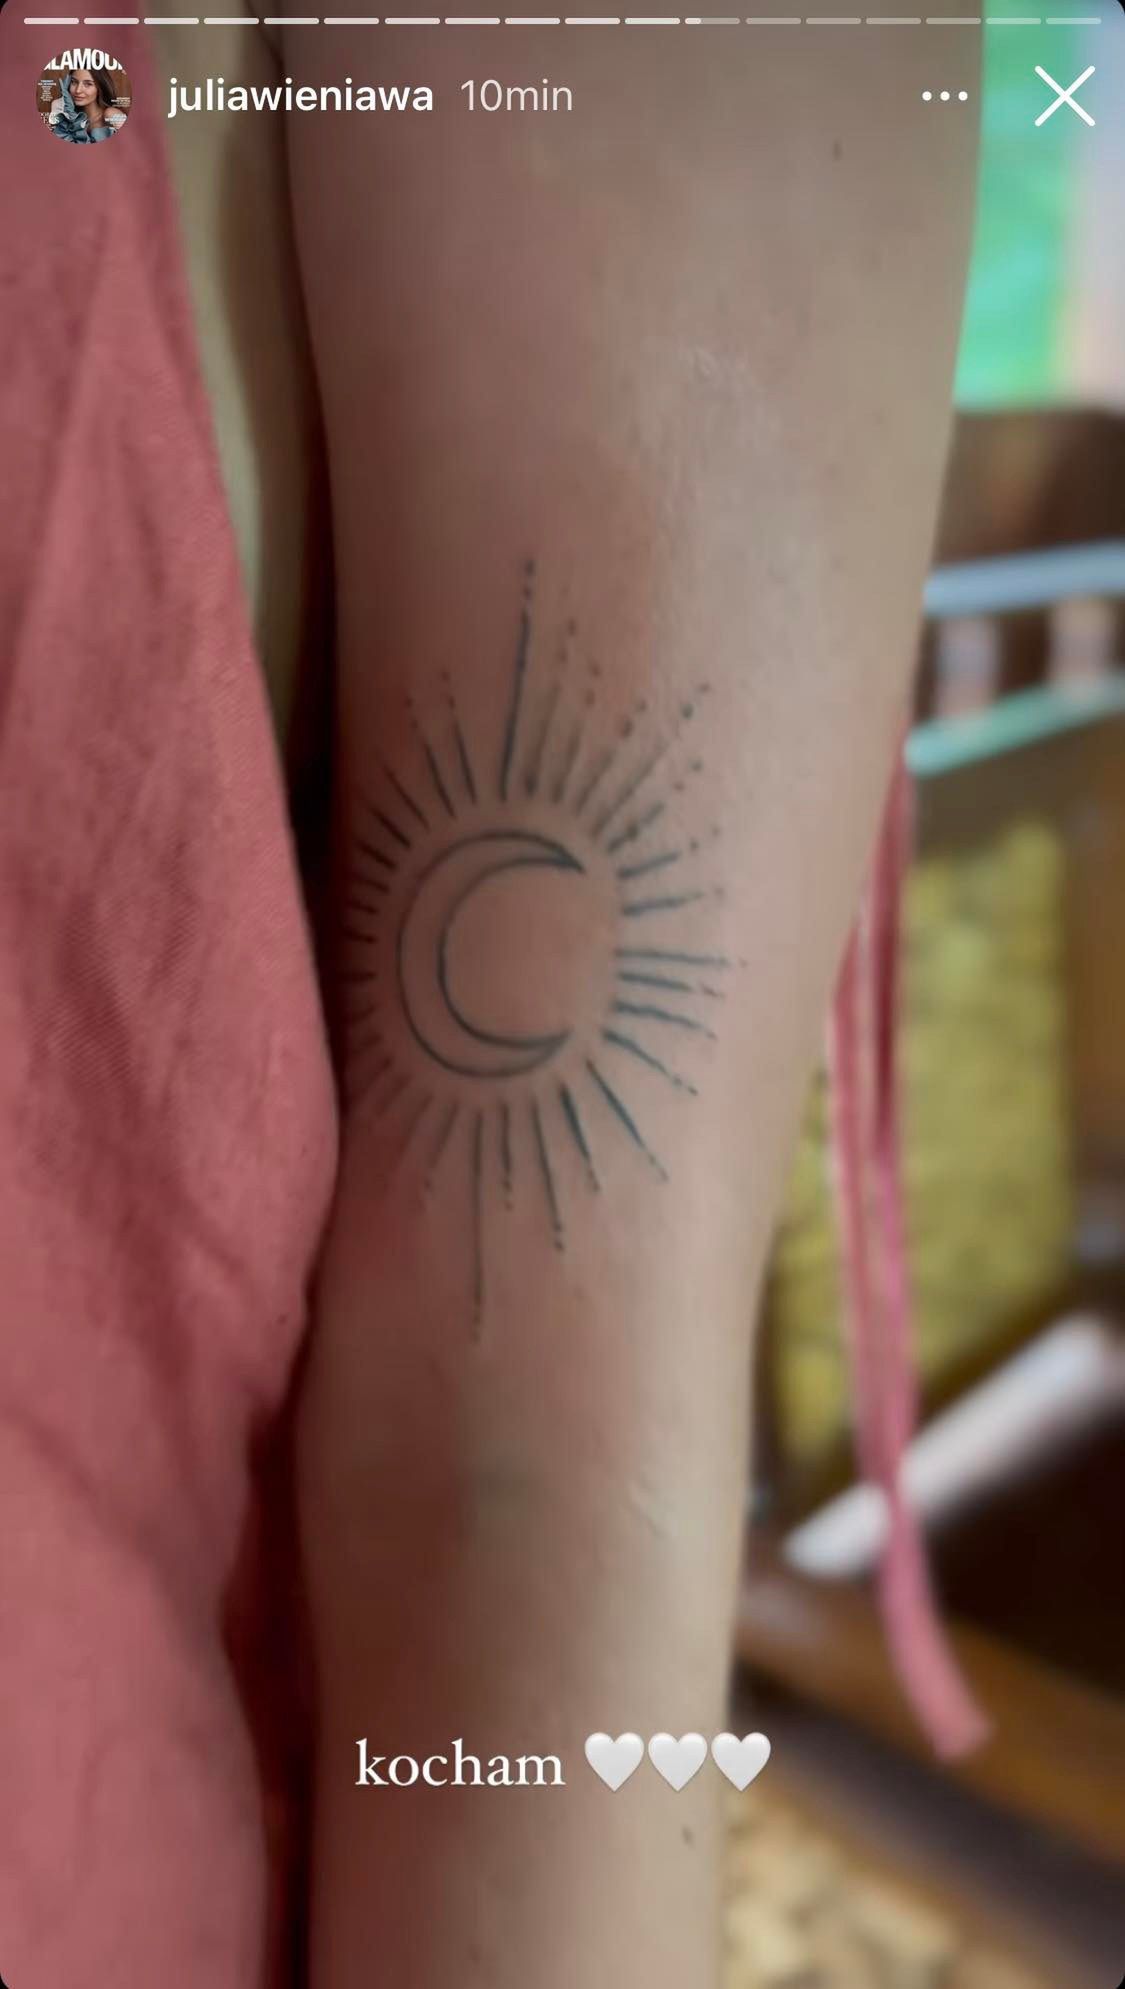 Tatuaż Julii Wieniawy to symbol życiowego balansu 